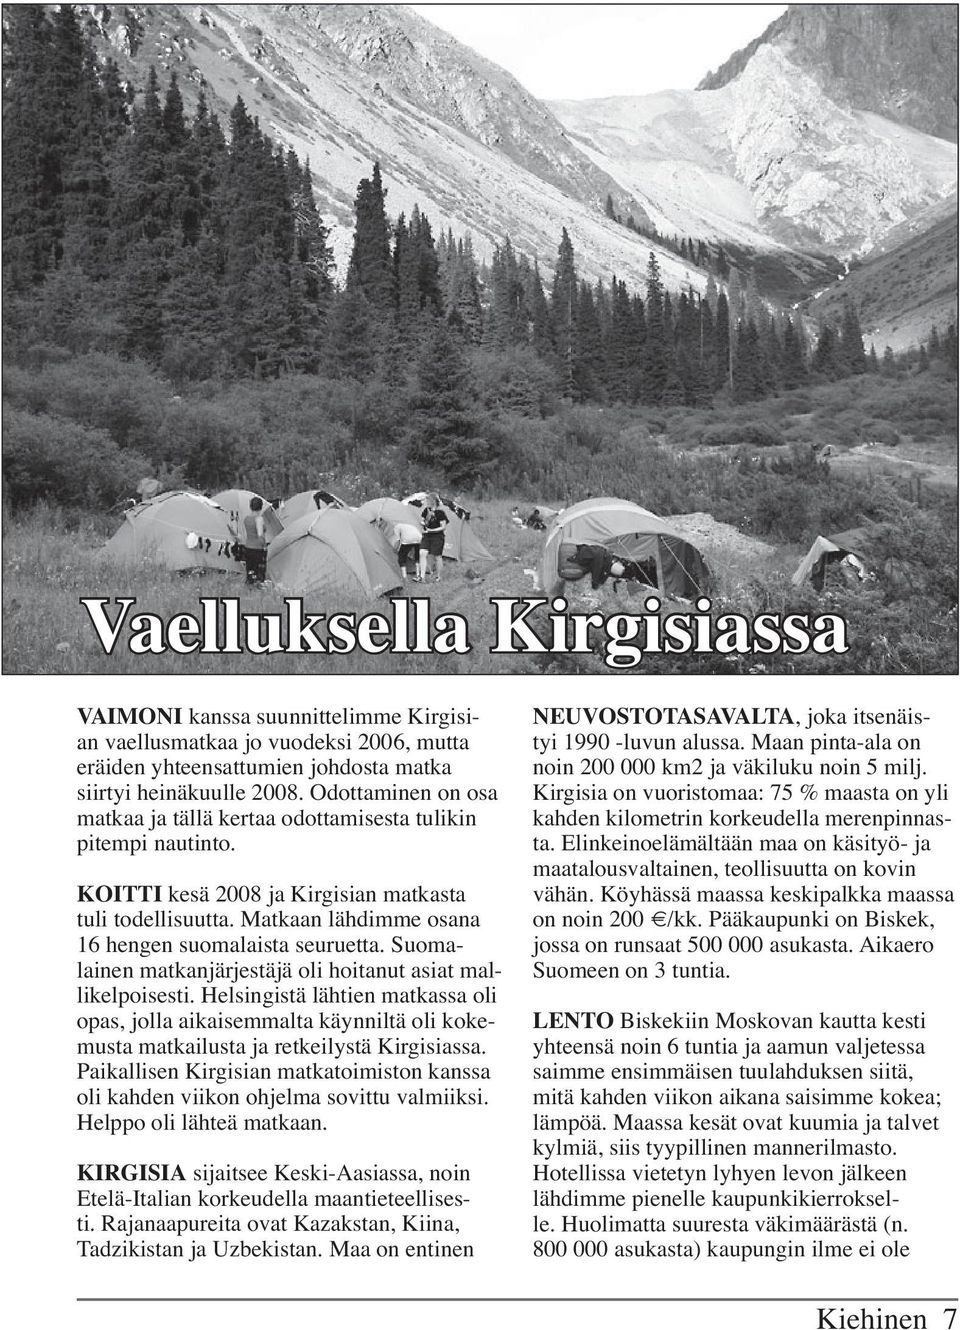 Suomalainen matkanjärjestäjä oli hoitanut asiat mallikelpoisesti. Helsingistä lähtien matkassa oli opas, jolla aikaisemmalta käynniltä oli kokemusta matkailusta ja retkeilystä Kirgisiassa.